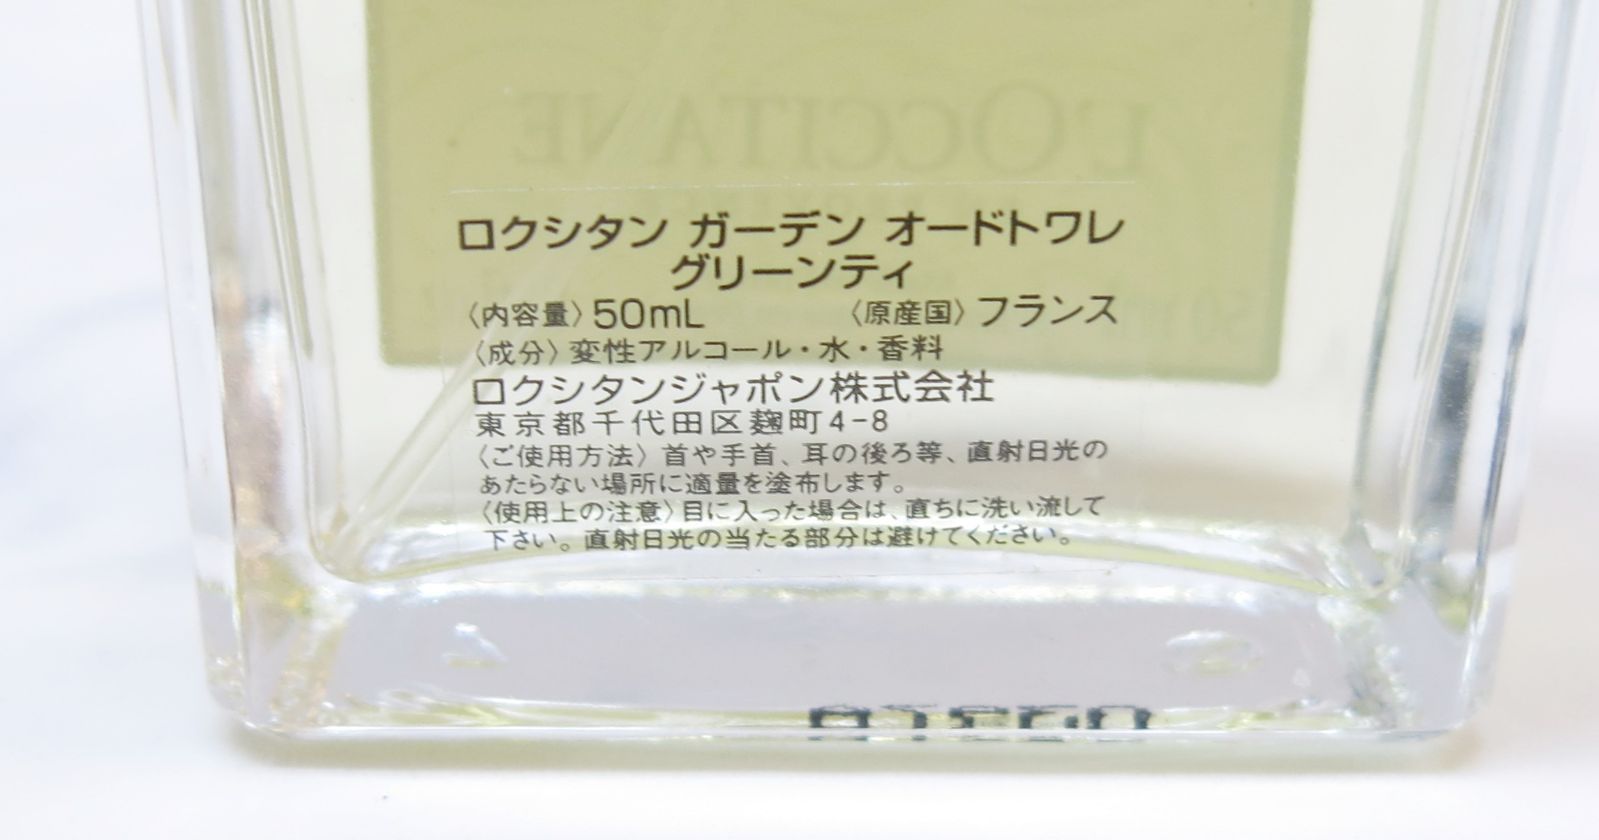 ロクシタンガーデン オードトワレ グリーンティ 50ml - 香水(ユニセックス)